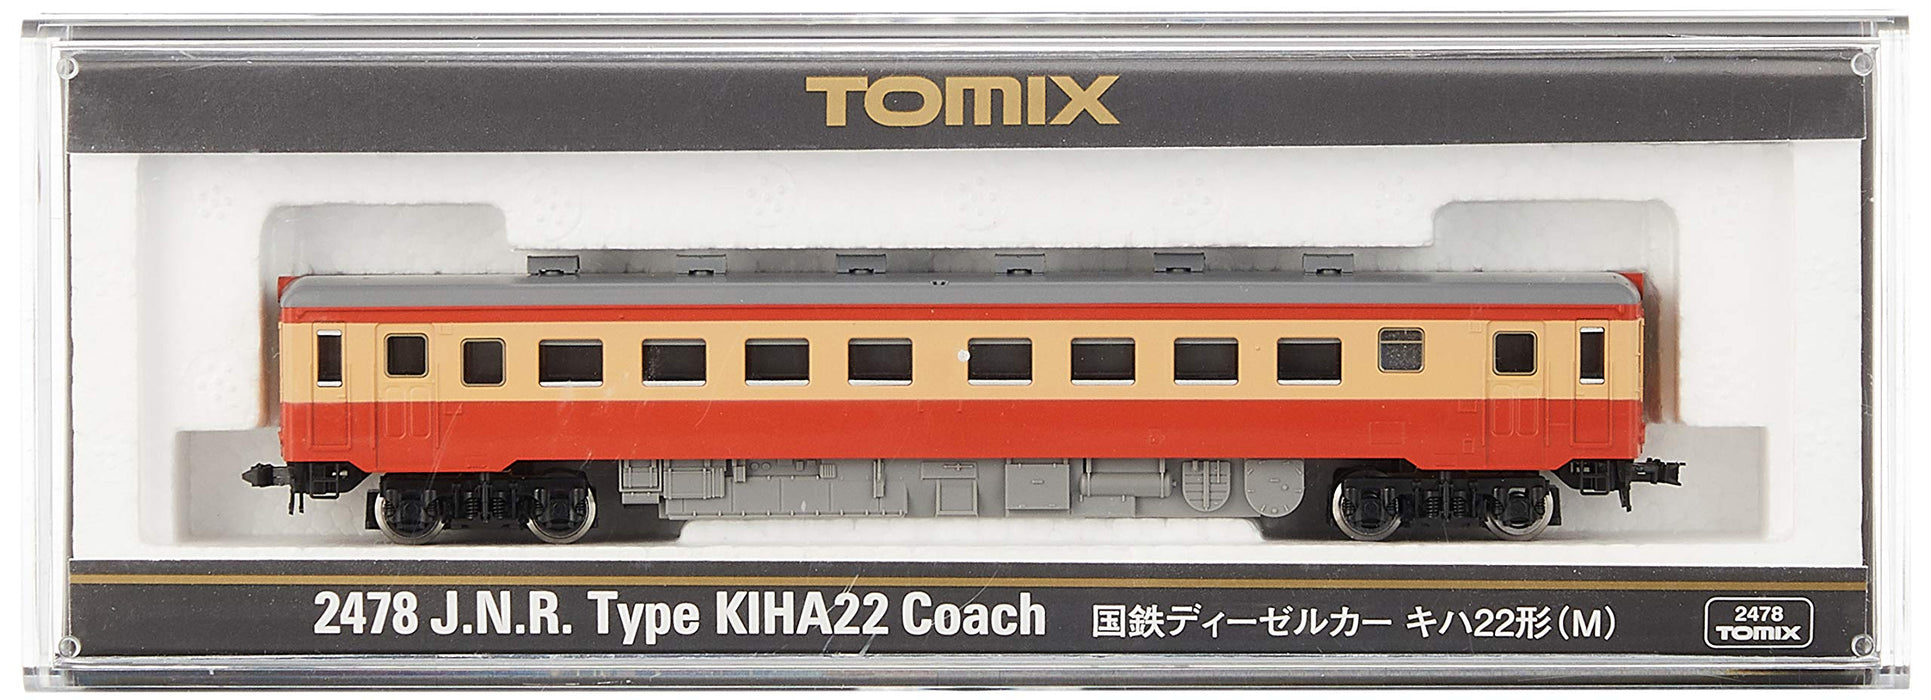 Tomytec Tomix N Gauge Kiha 22 M 2478 Diesel Railway Model Car